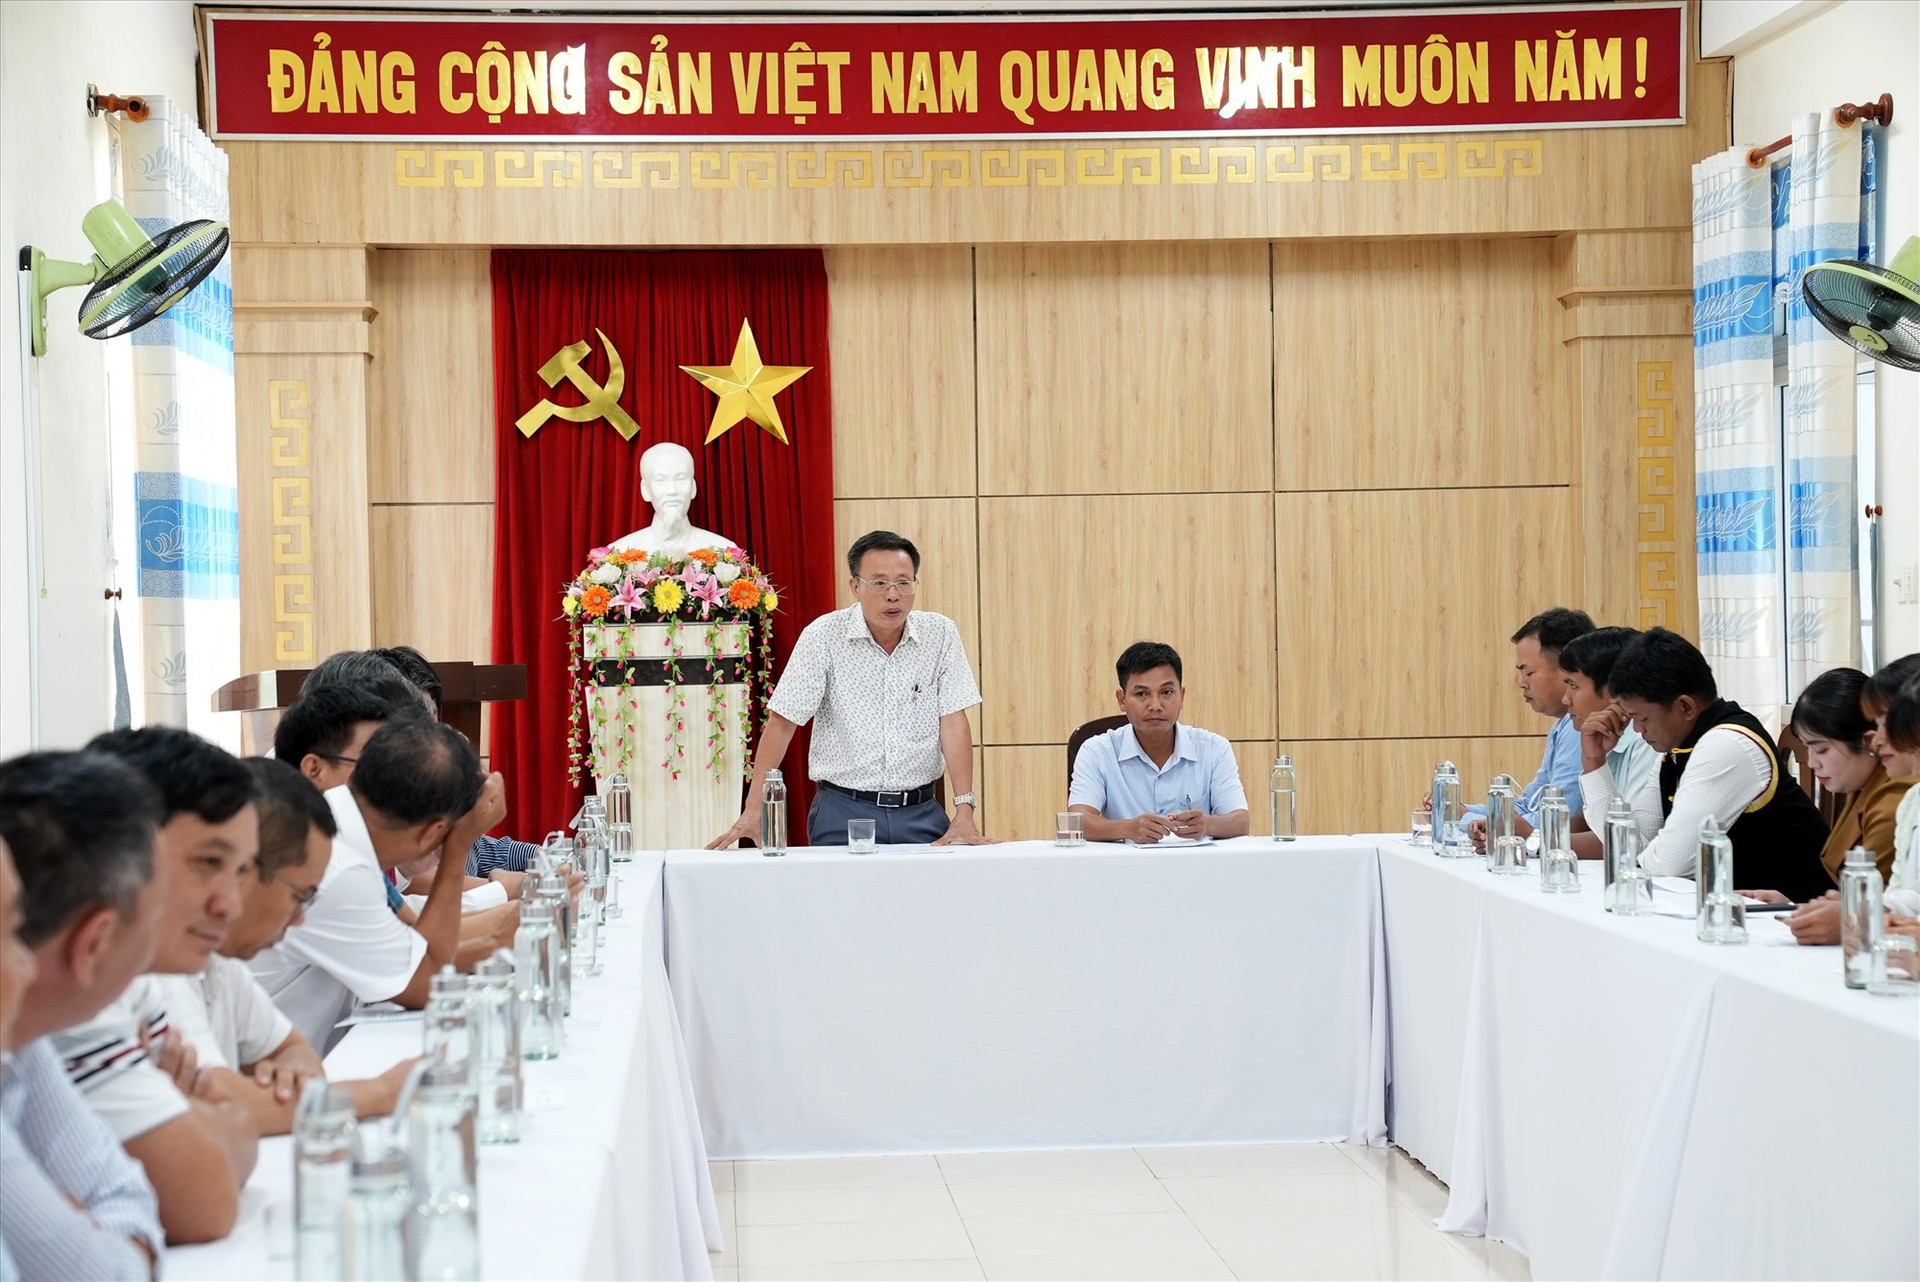 Ông Lê Văn Nhi - Tổng Biên tập Báo Quảng Nam phát biểu tại buổi làm việc. Ảnh: H.Q